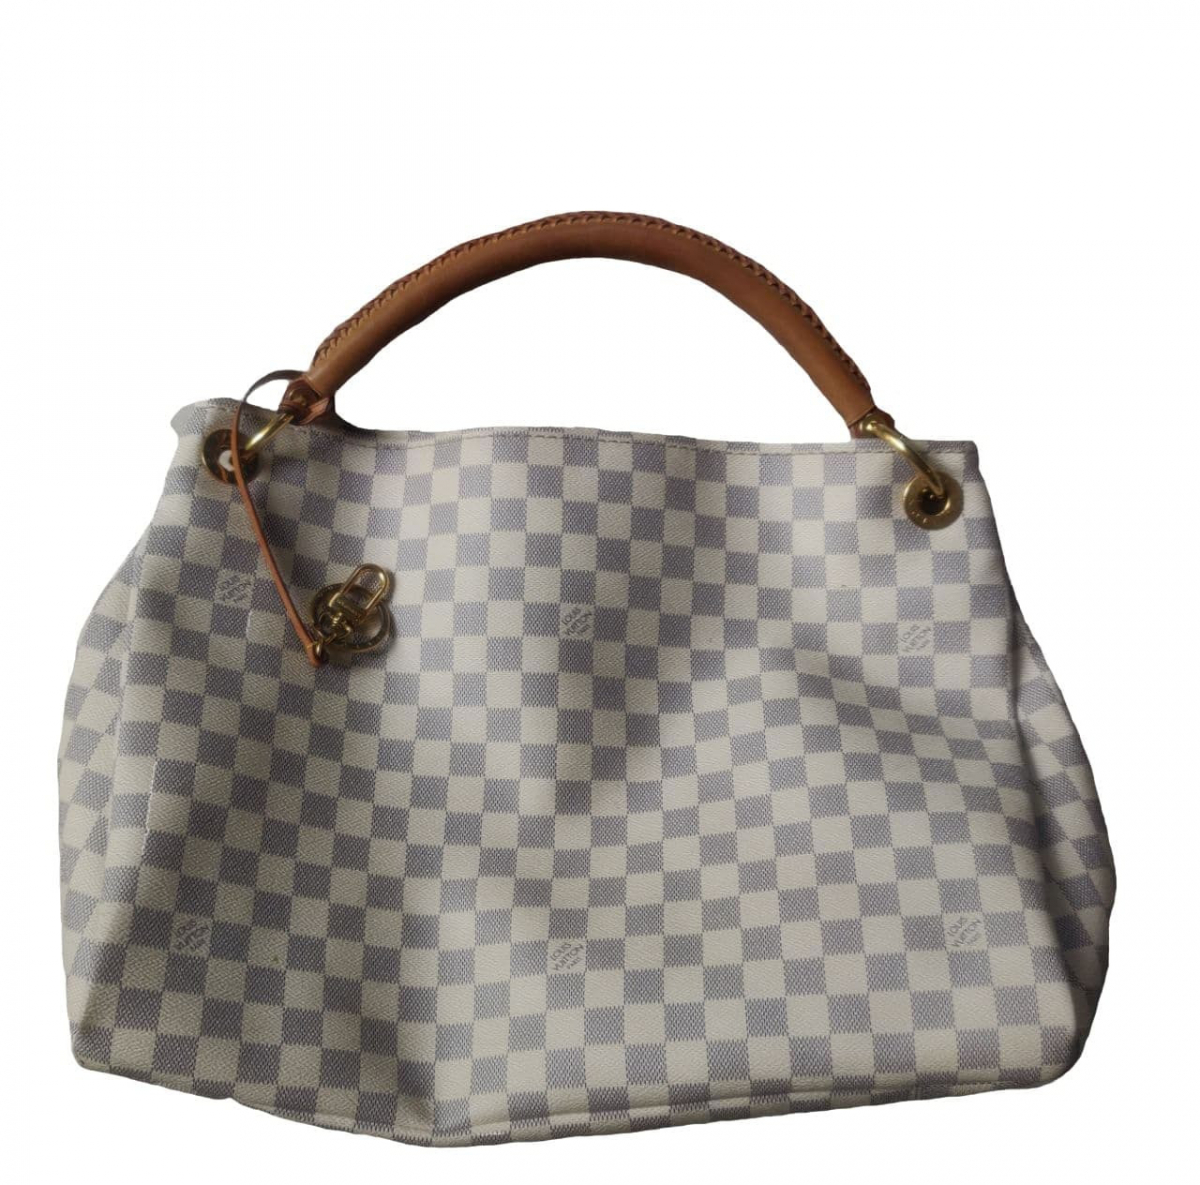 Поясная сумка Louis Vuitton V10914 купить в Москве  цены в  интернетмагазине МирМиланару